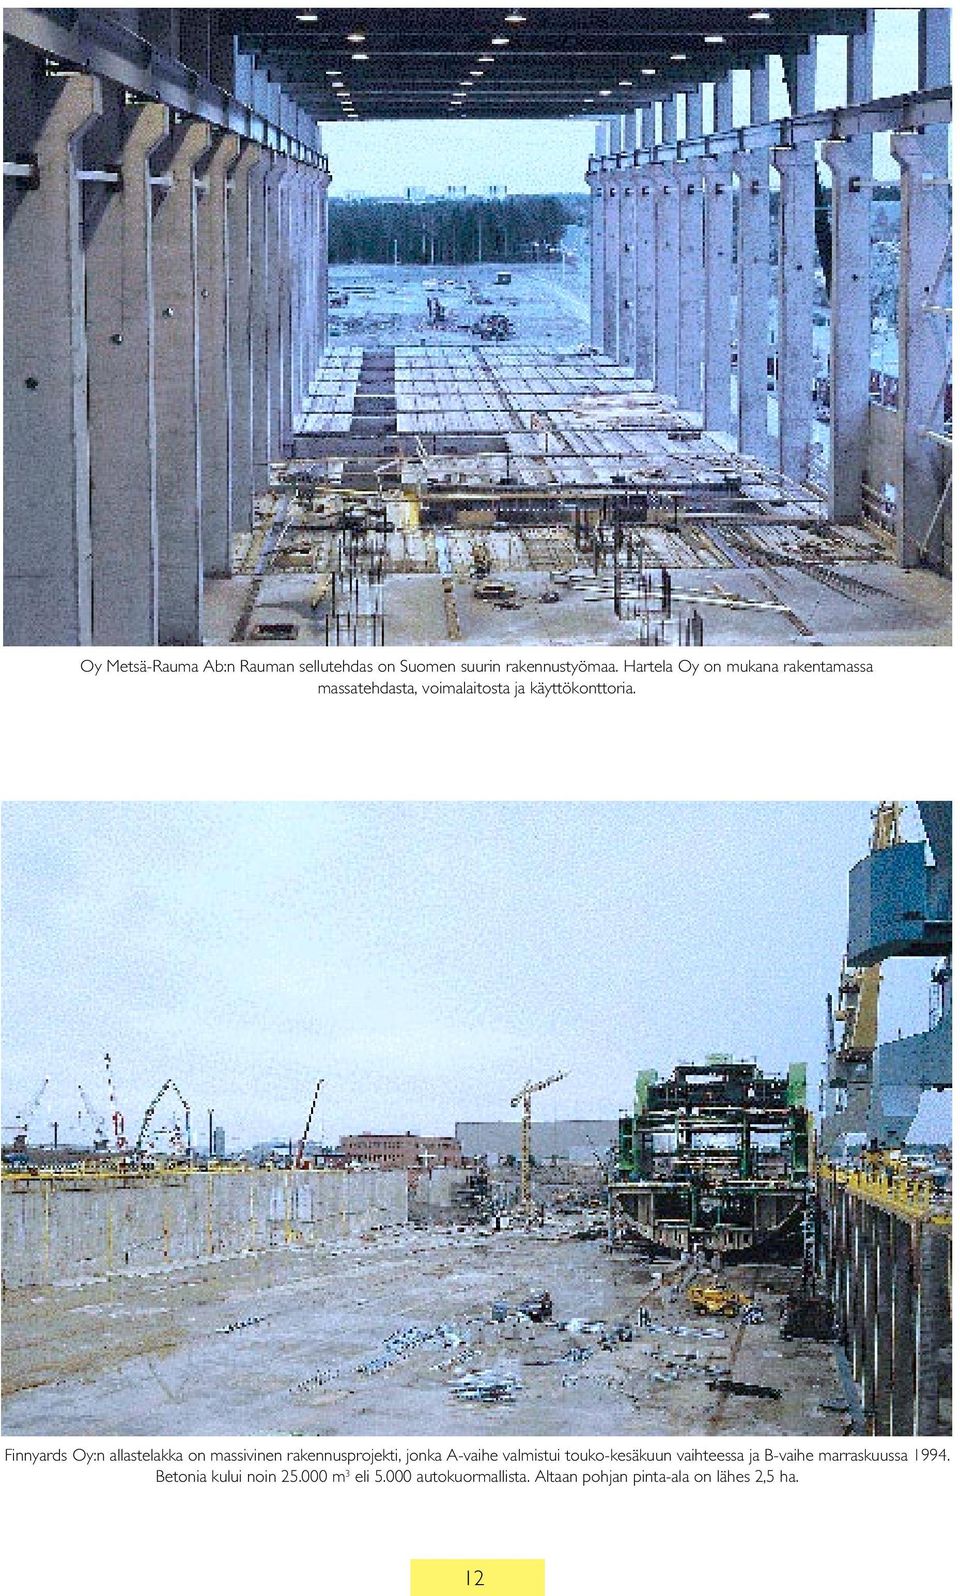 Finnyards Oy:n allastelakka on massivinen rakennusprojekti, jonka A-vaihe valmistui touko-kesäkuun